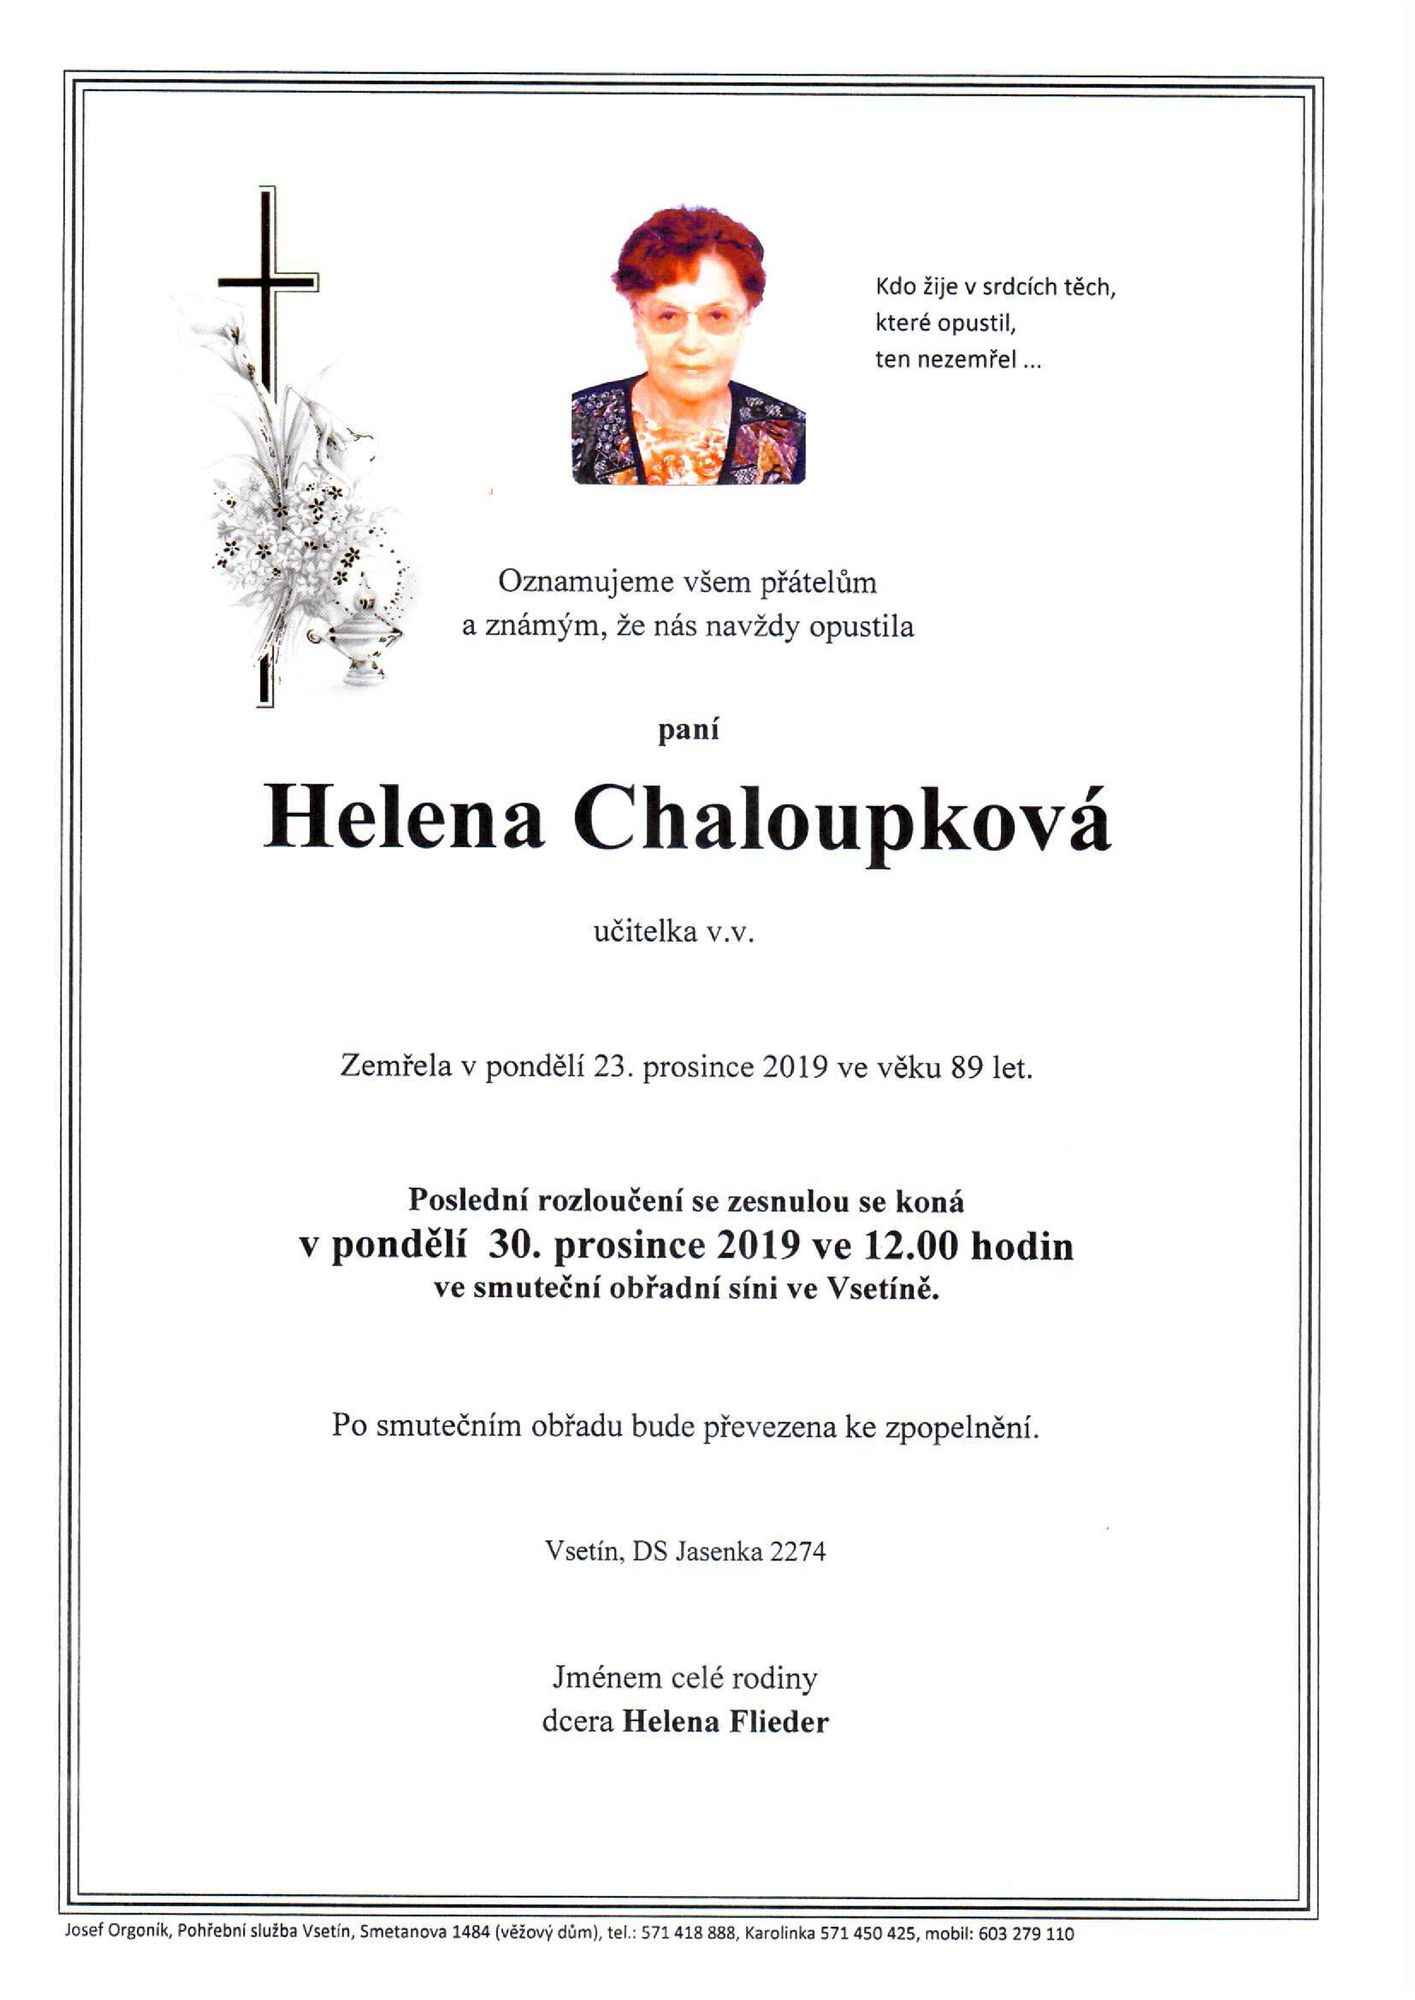 Helena Chaloupková